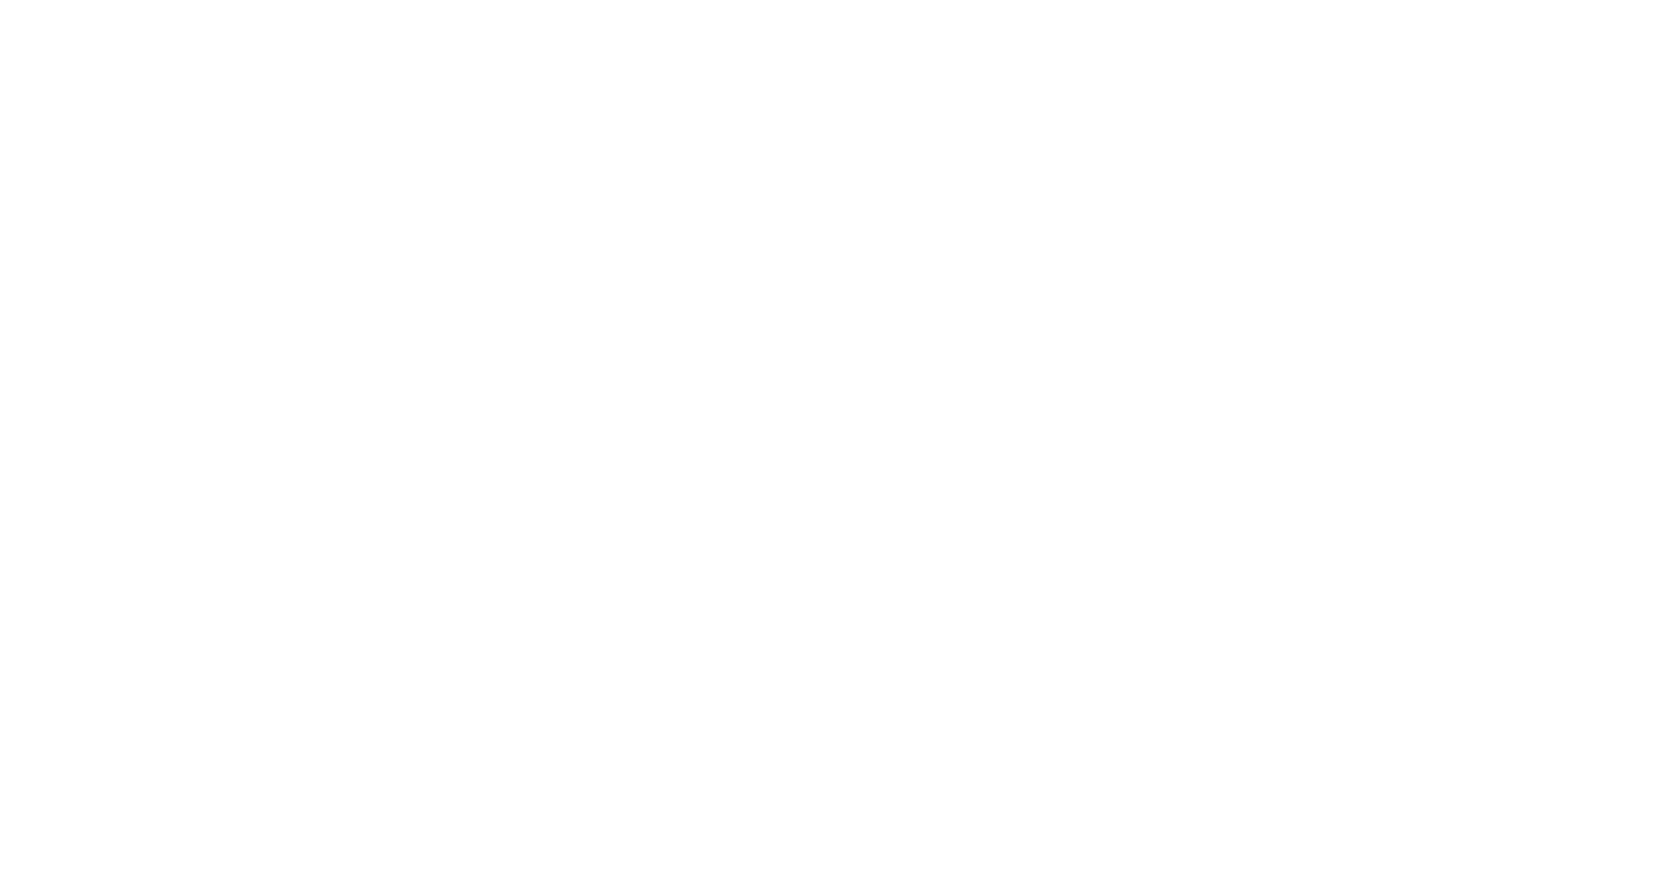 Участники проекта «Музыкальная эстафета — 2015» и оркестр «Серебряные струны» после концерта в Белом зале Политехнического университета Петра Великого (2015 г.)